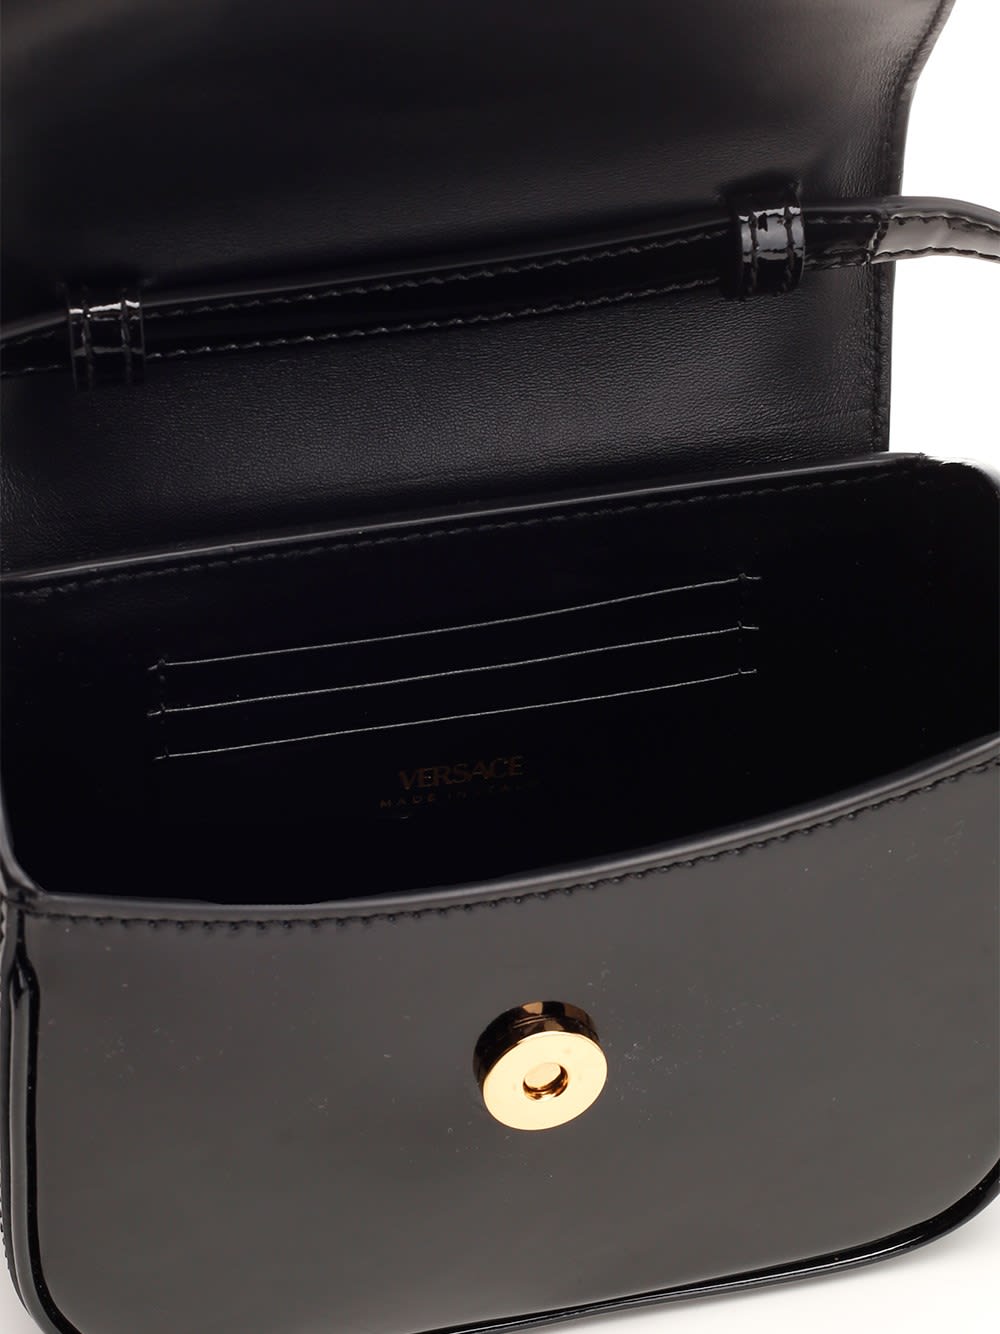 Shop Versace La Medusa Mini Bag In Patent Leather In Nero/oro